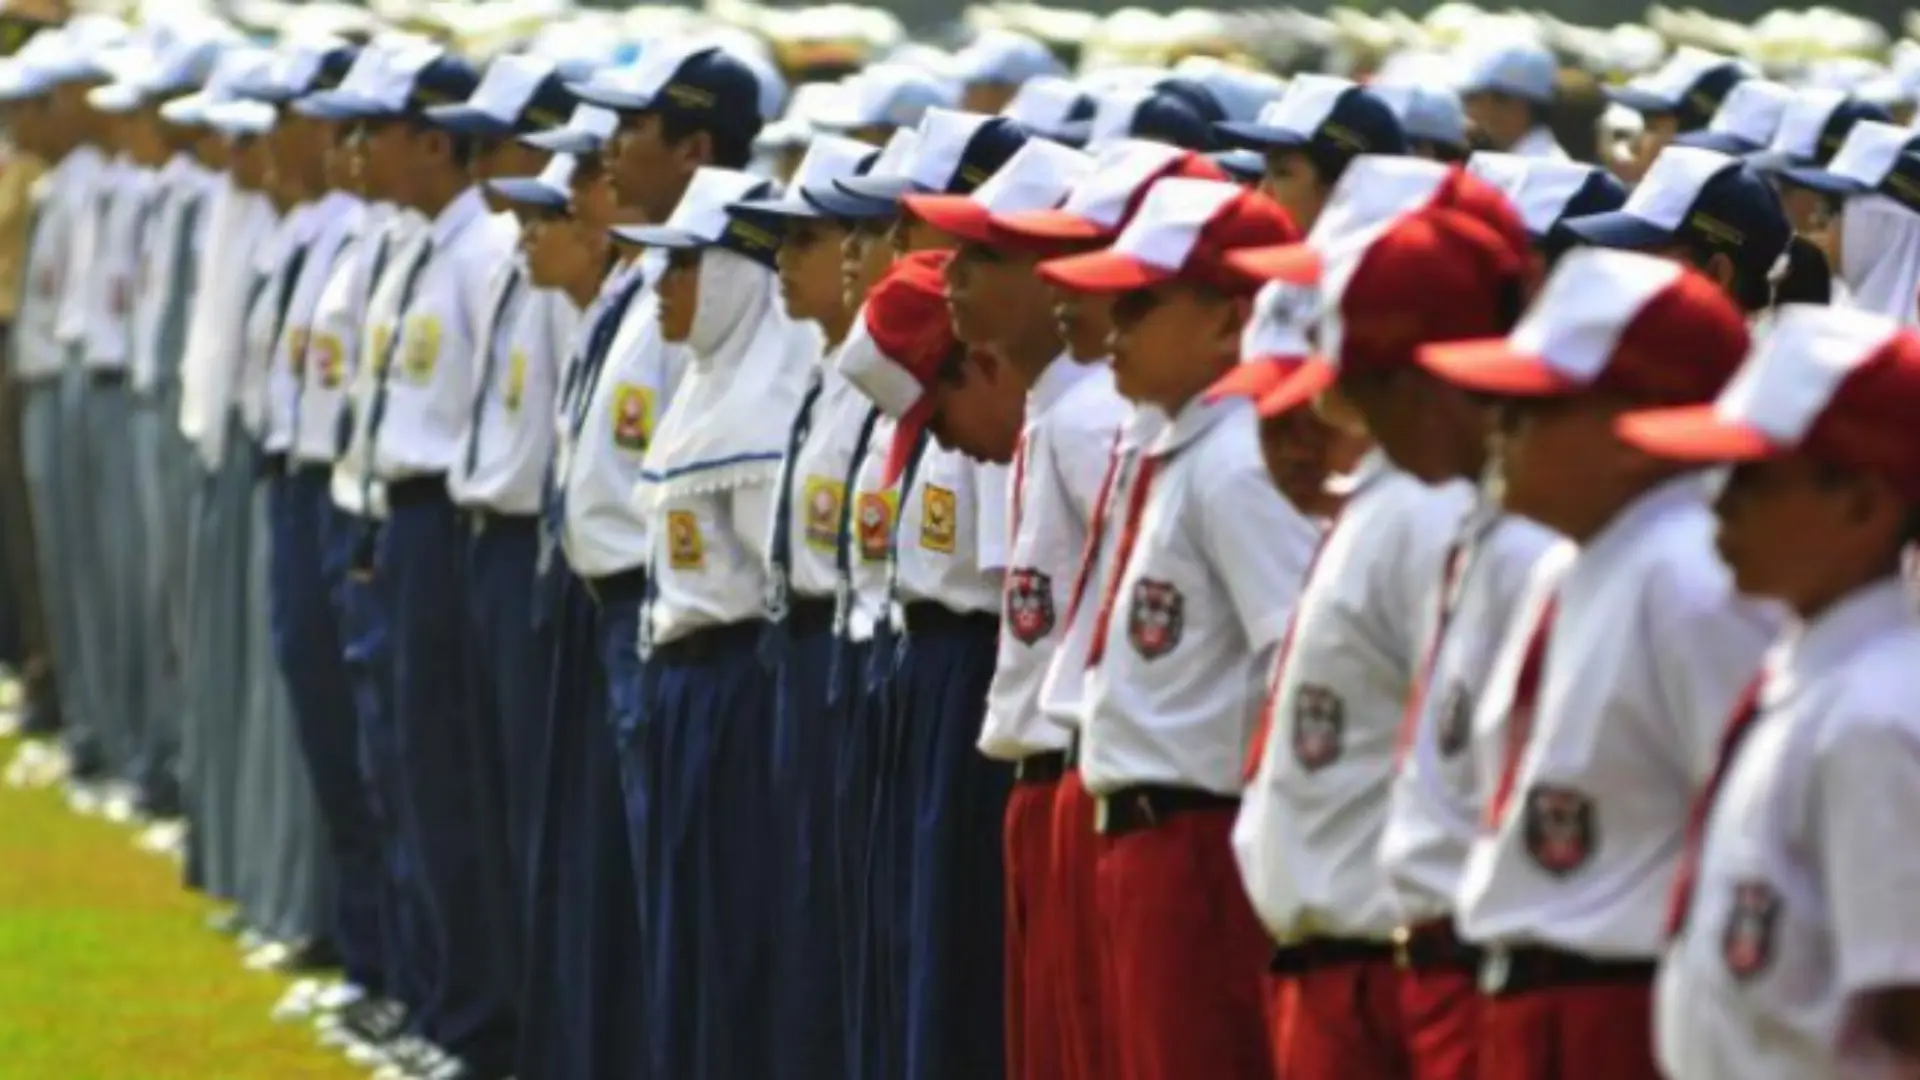 Apa kewajiban yang harus dilakukan pelajar agar indonesia makin maju